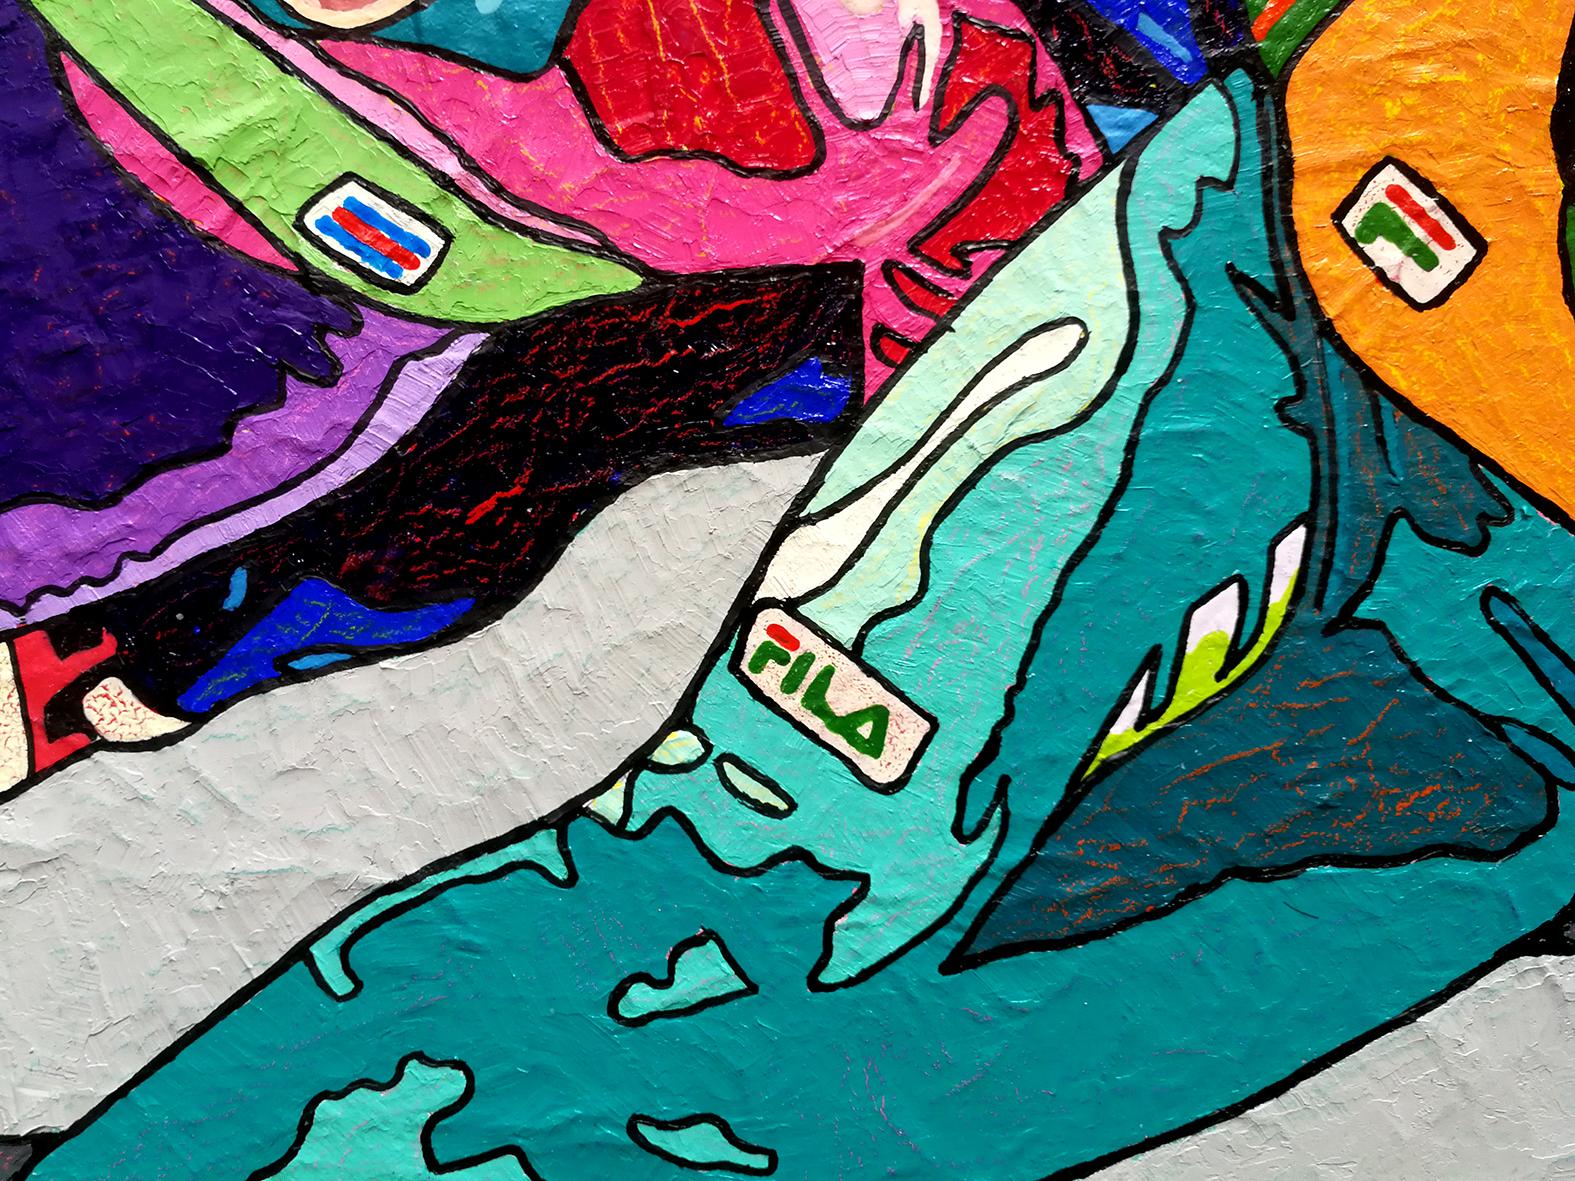 Winterspiele, das große Finale – Sport-Gemälde in den Farben Orange, Gelb, Grün und Blau (Pop-Art), Painting, von Vlado Vesselinov